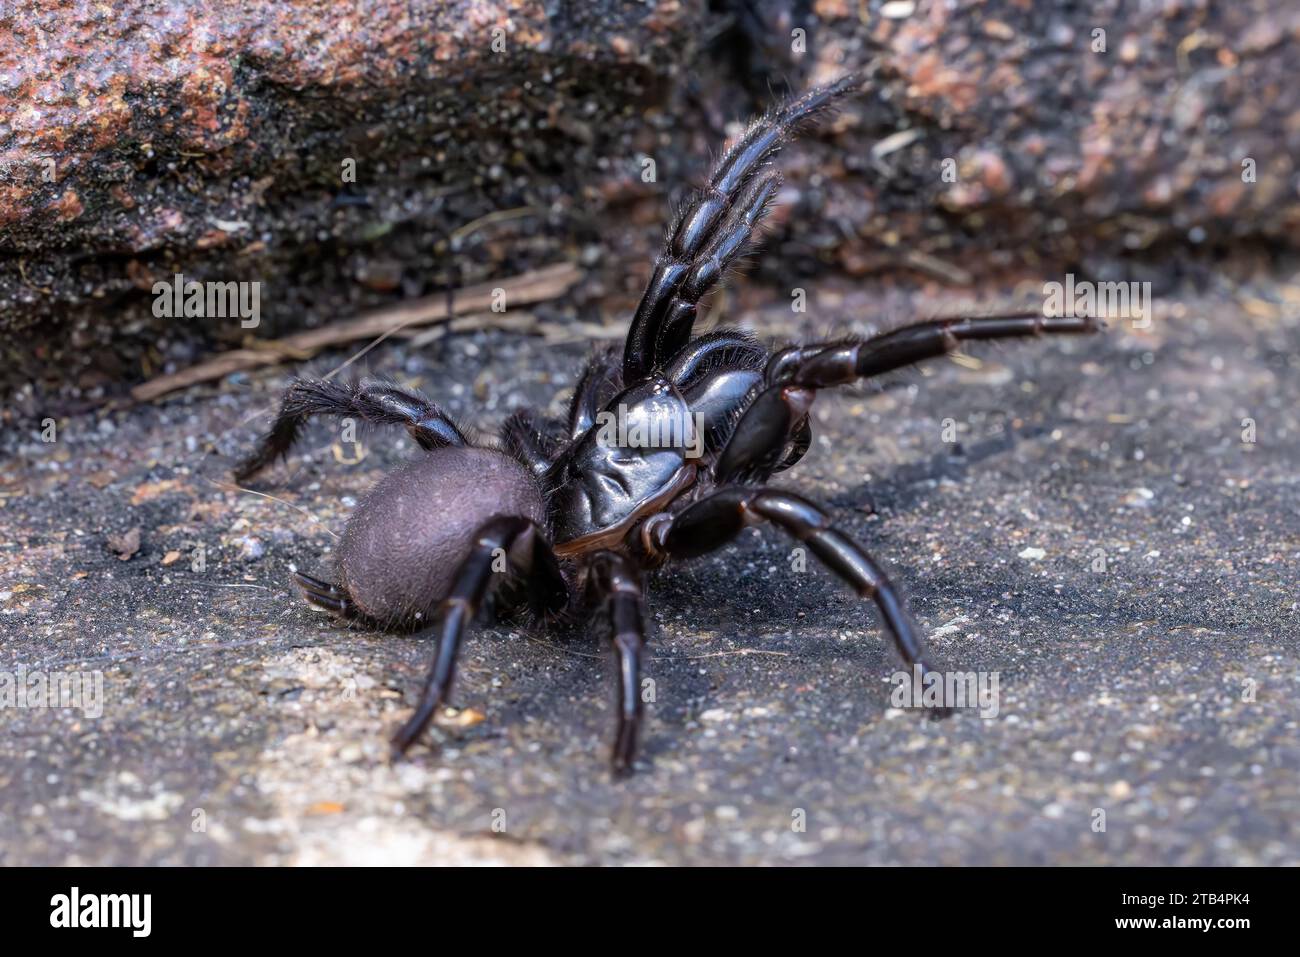 Femme Sydney Funnel Web Spider en position défensive Banque D'Images